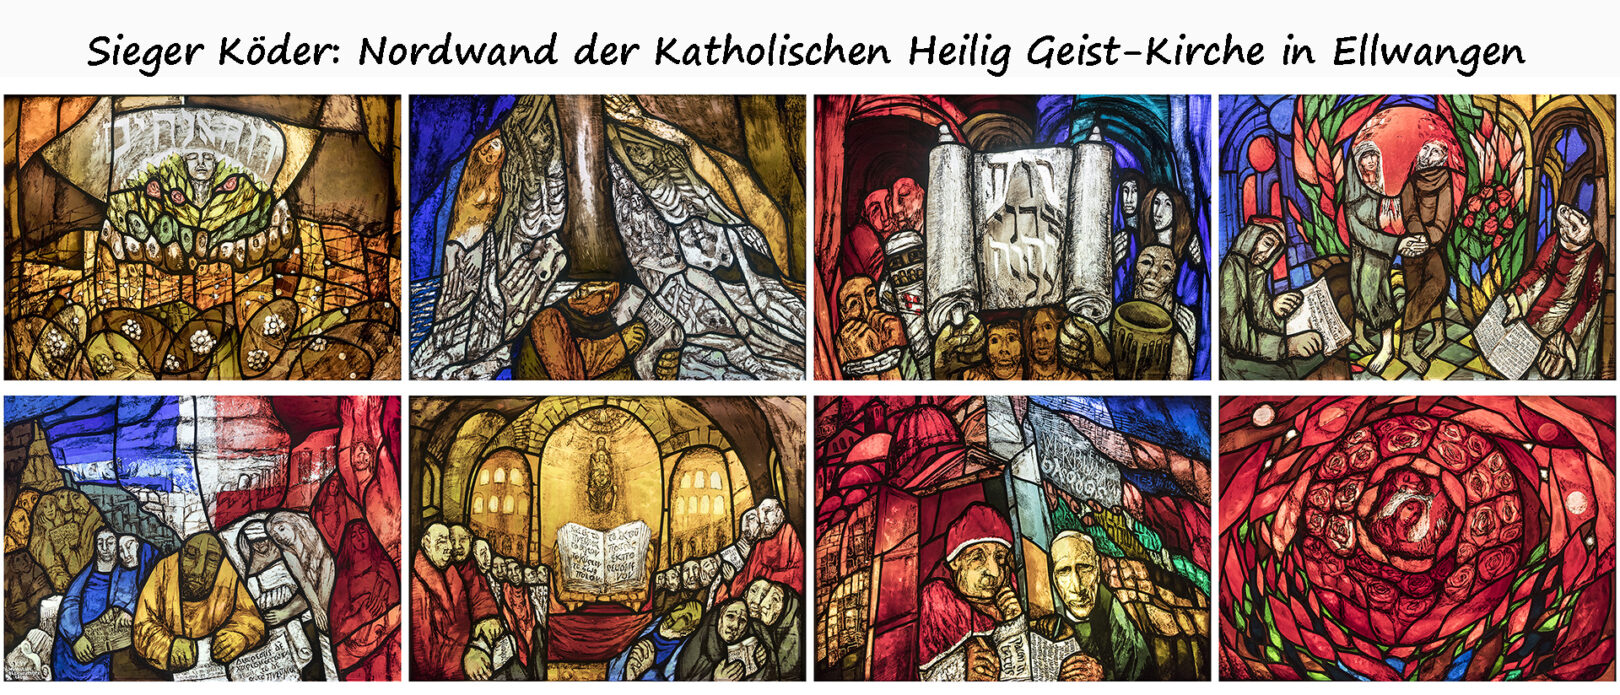 Sieger Köder: Nordwand der Katholischen Heilig Geist-Kirche, Ellwangen.